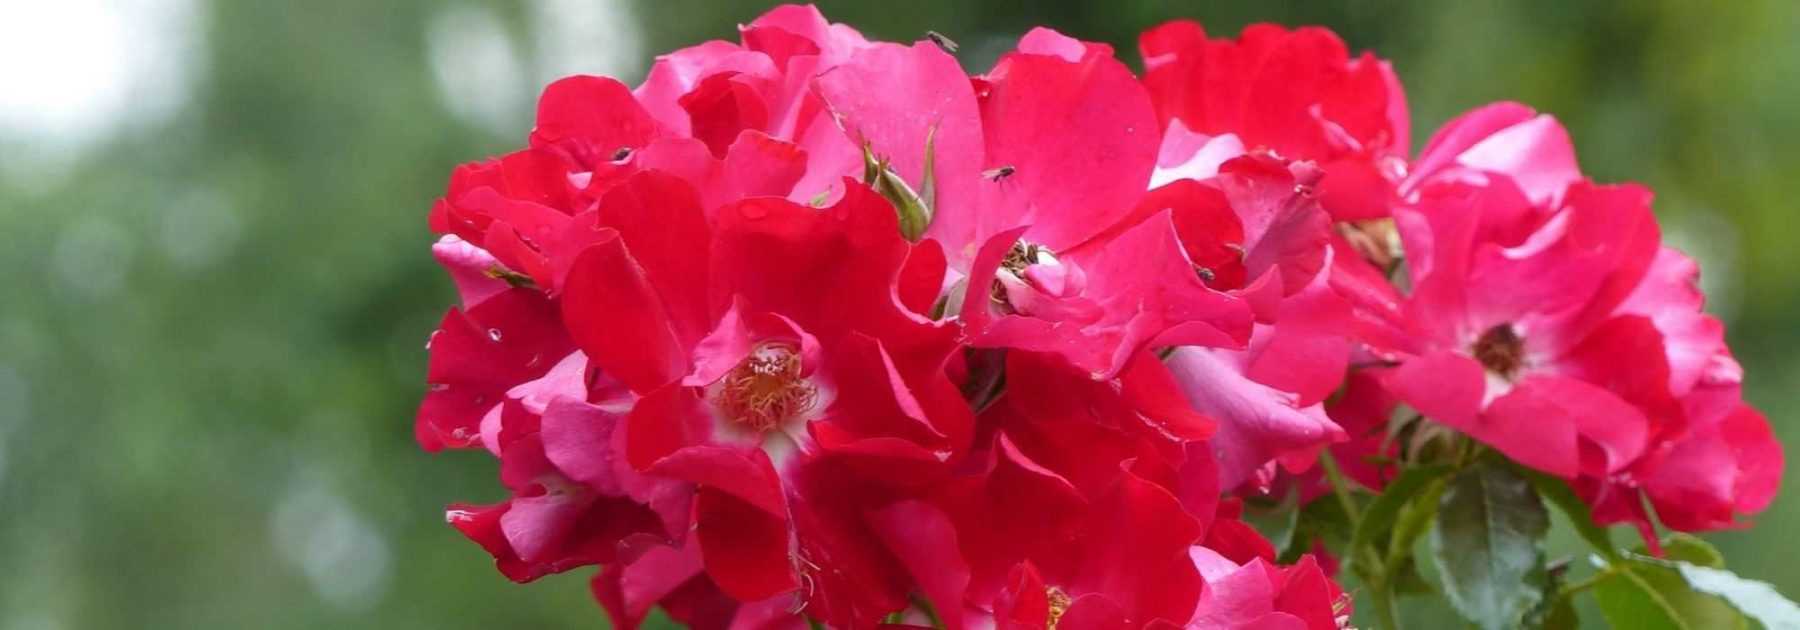 7 rosiers à fleurs d’églantines rouges